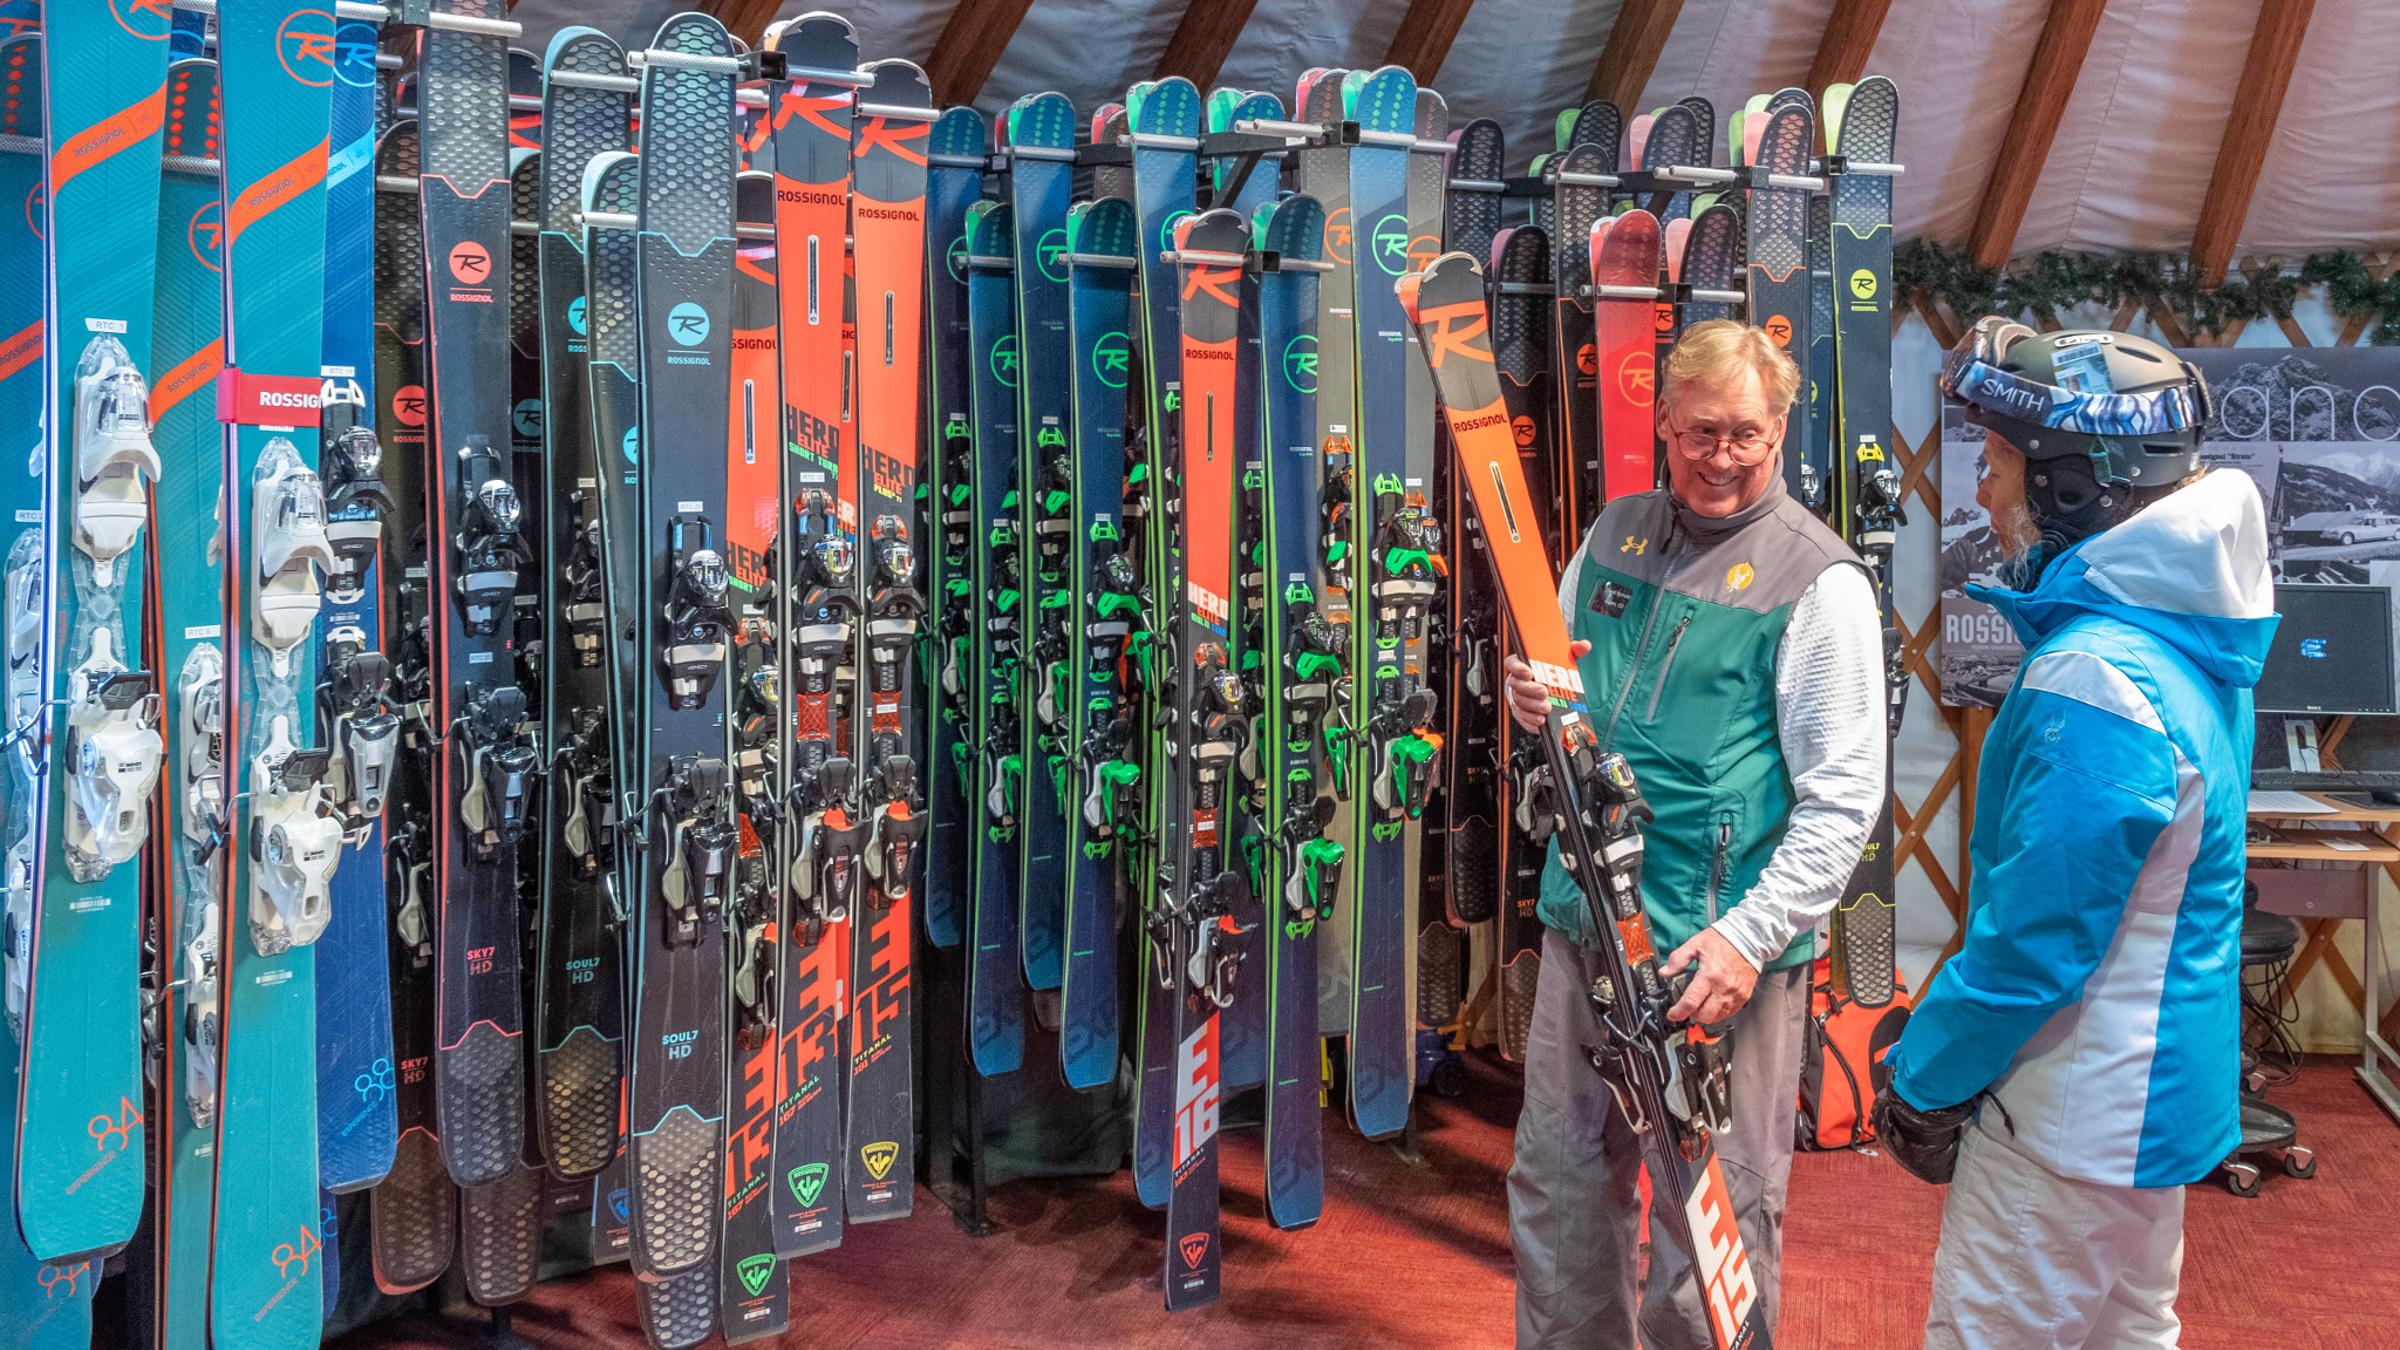 a yurt staff memeber showing a guest skis